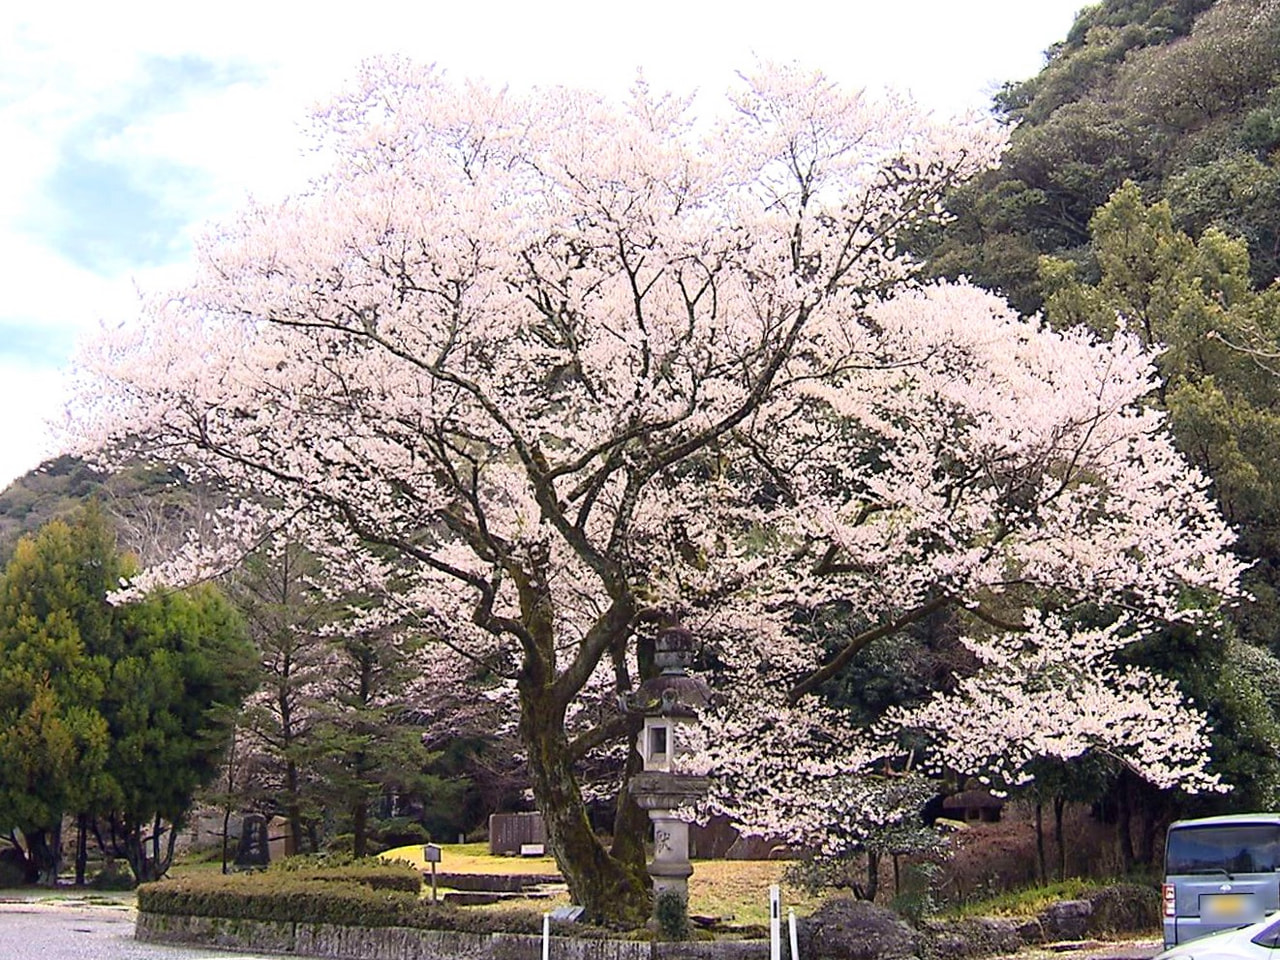 岐阜市の岐阜護国神社で早咲きの鵜飼桜が満開となっていて、訪れた人たちを楽しませて...